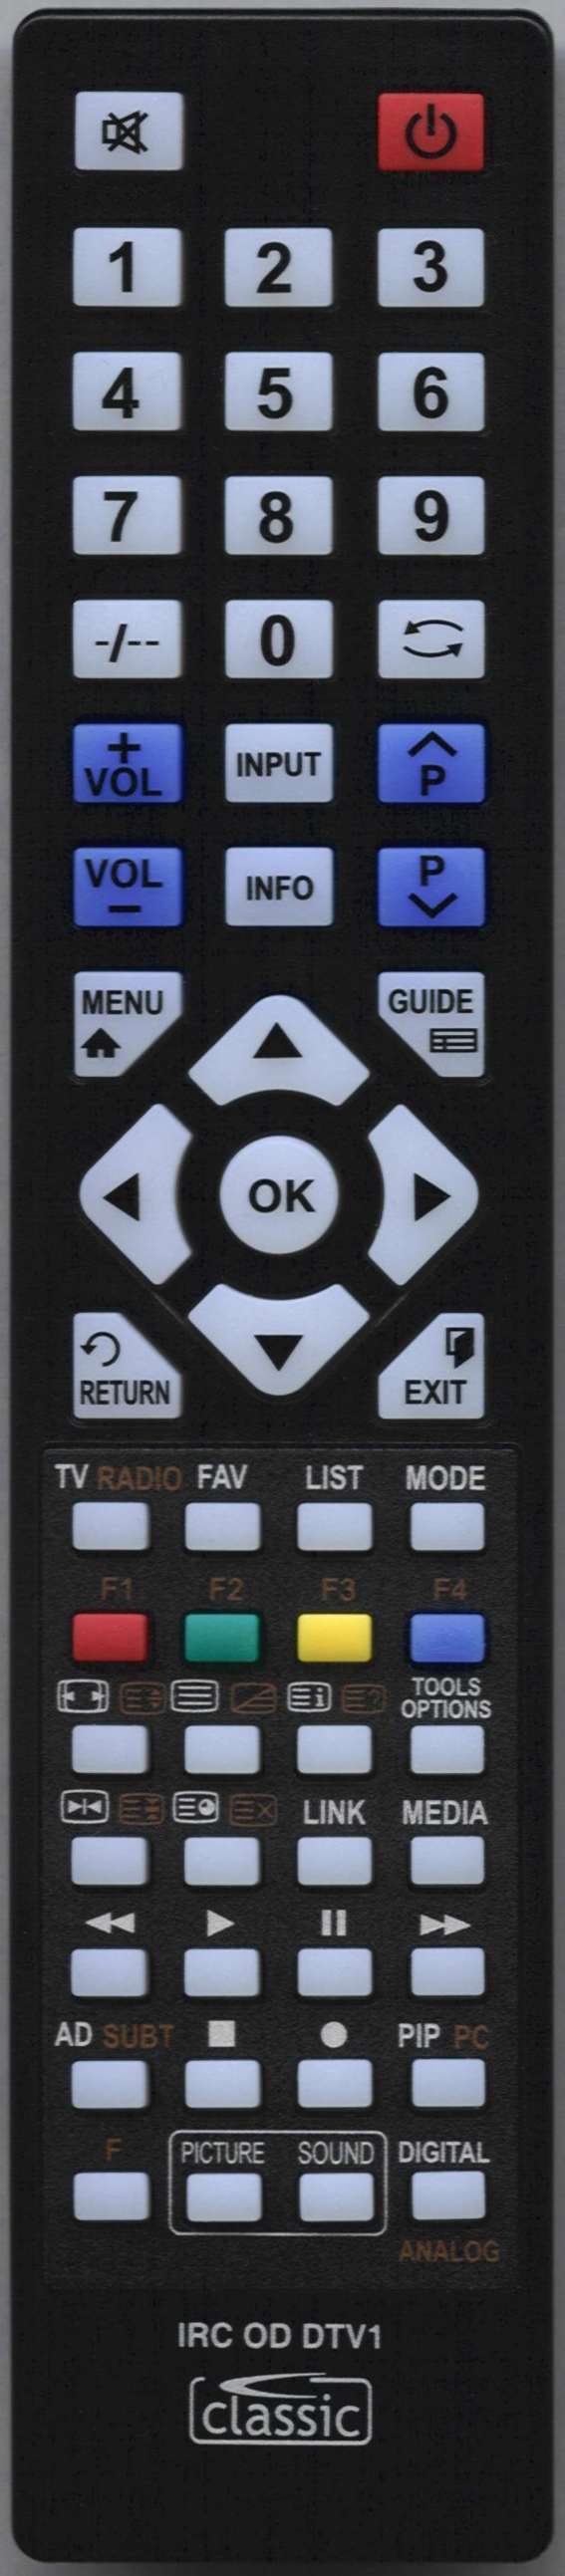 SONY KDL32W705C Remote Control Alternative